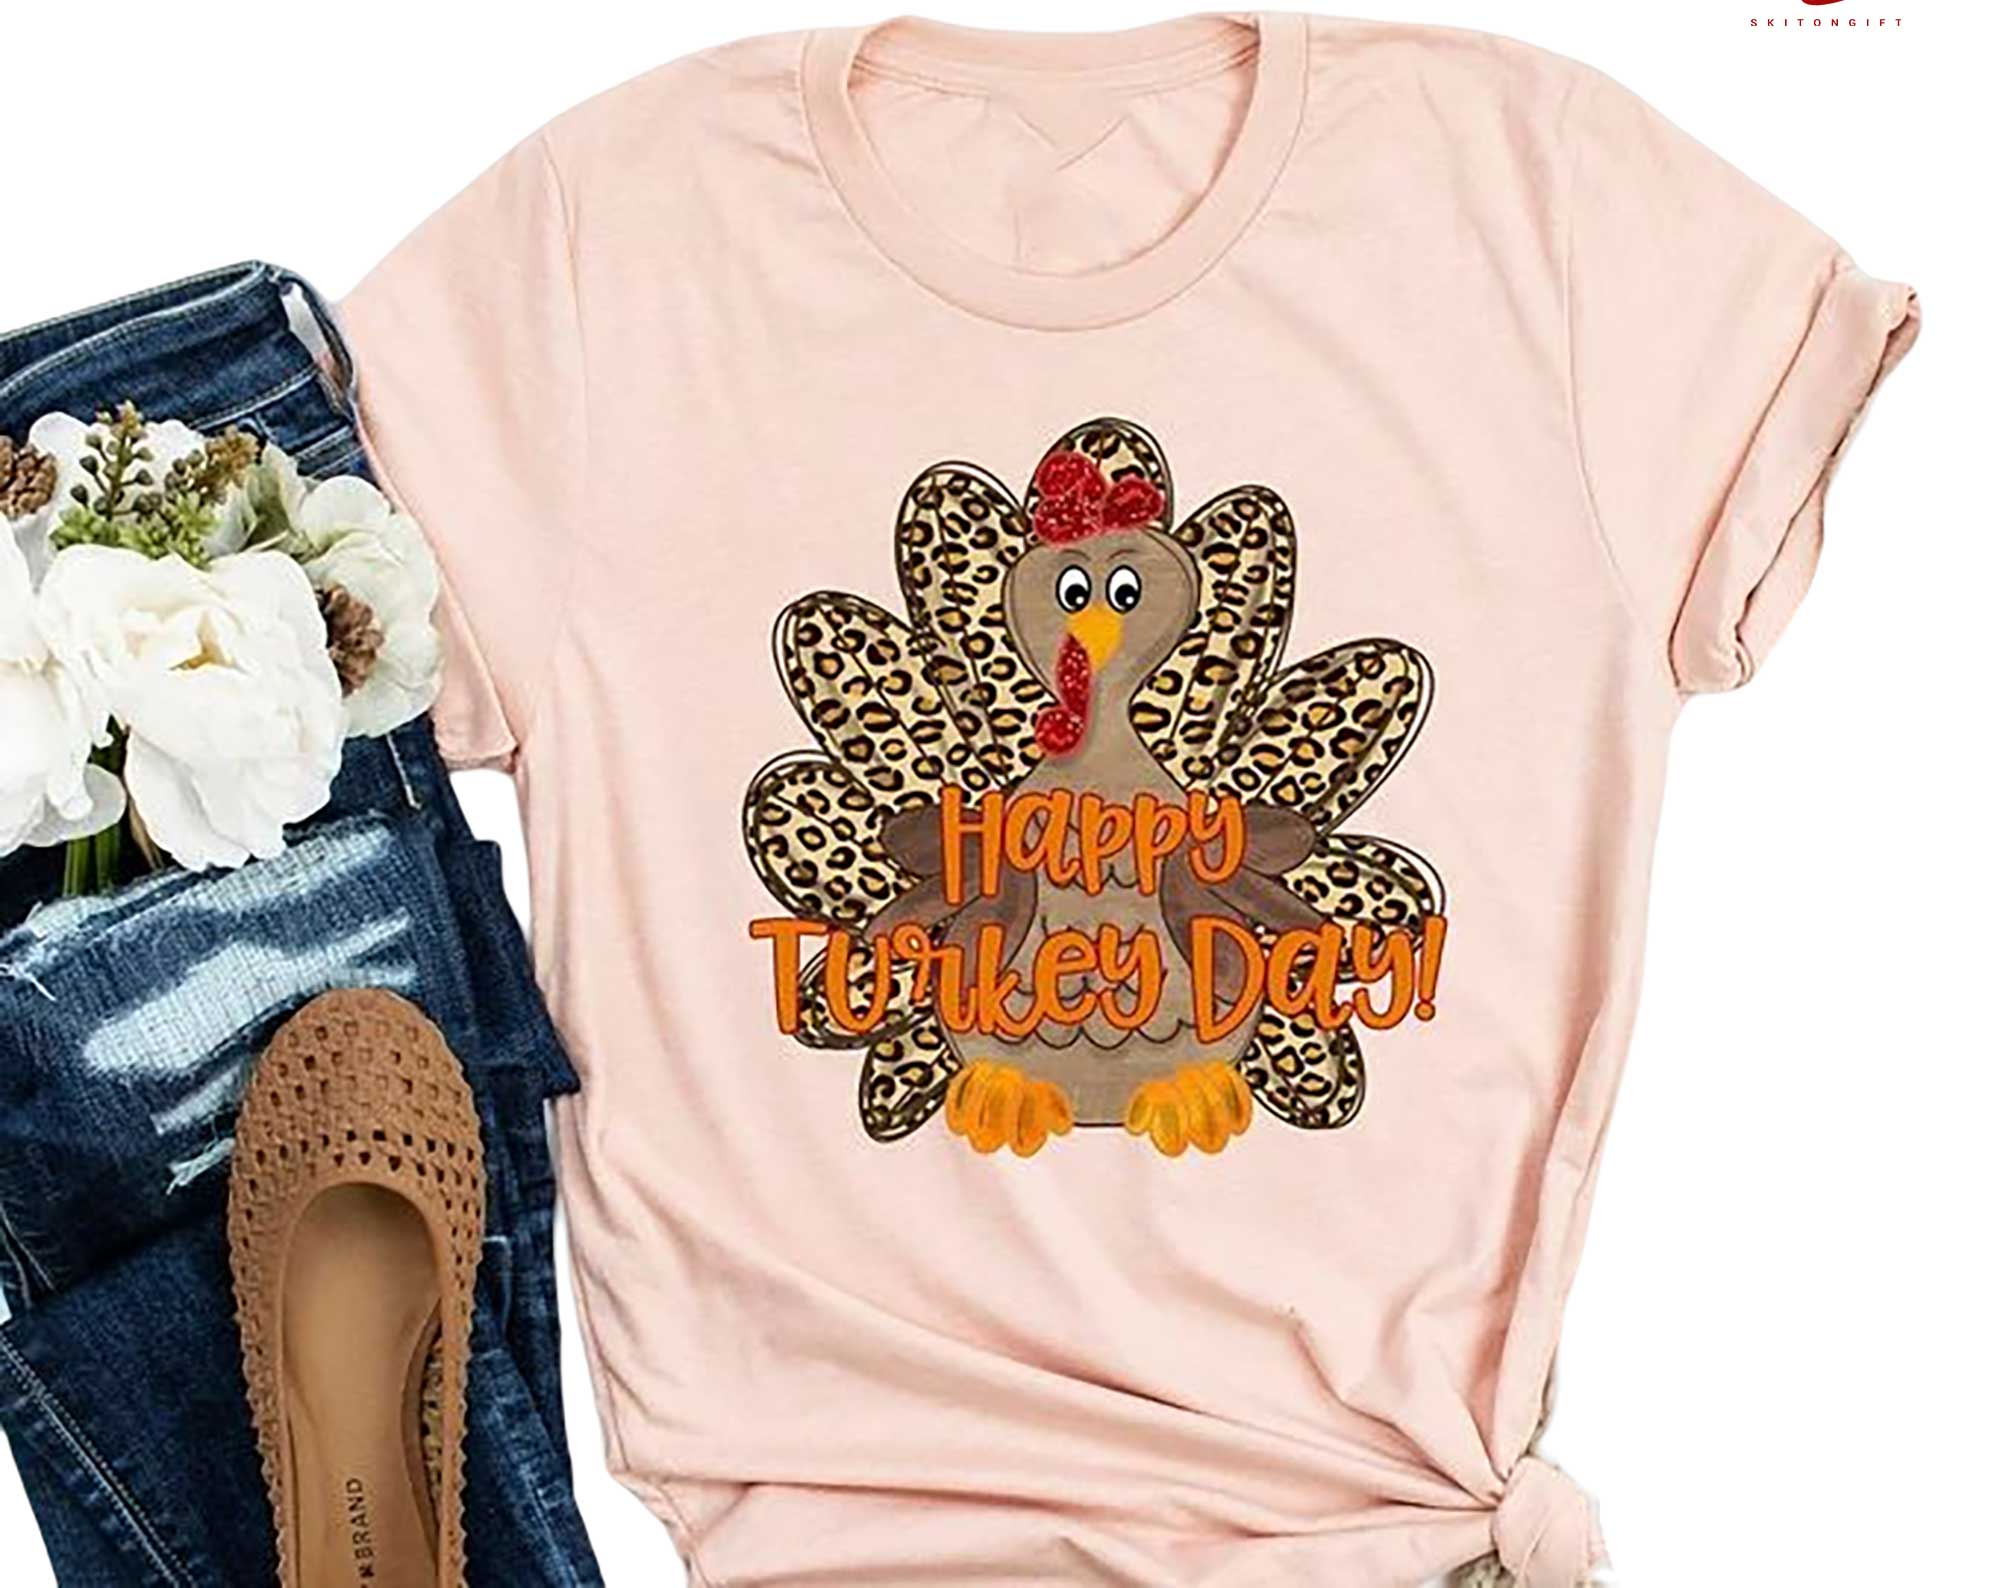 Skitongift Happy Turkey Day Shirt Cute Turkey Shirt Turkey Shirt Happy Thanksgiving Shirt Funny Shirts Long Sleeve Tee Hoody Hoodie